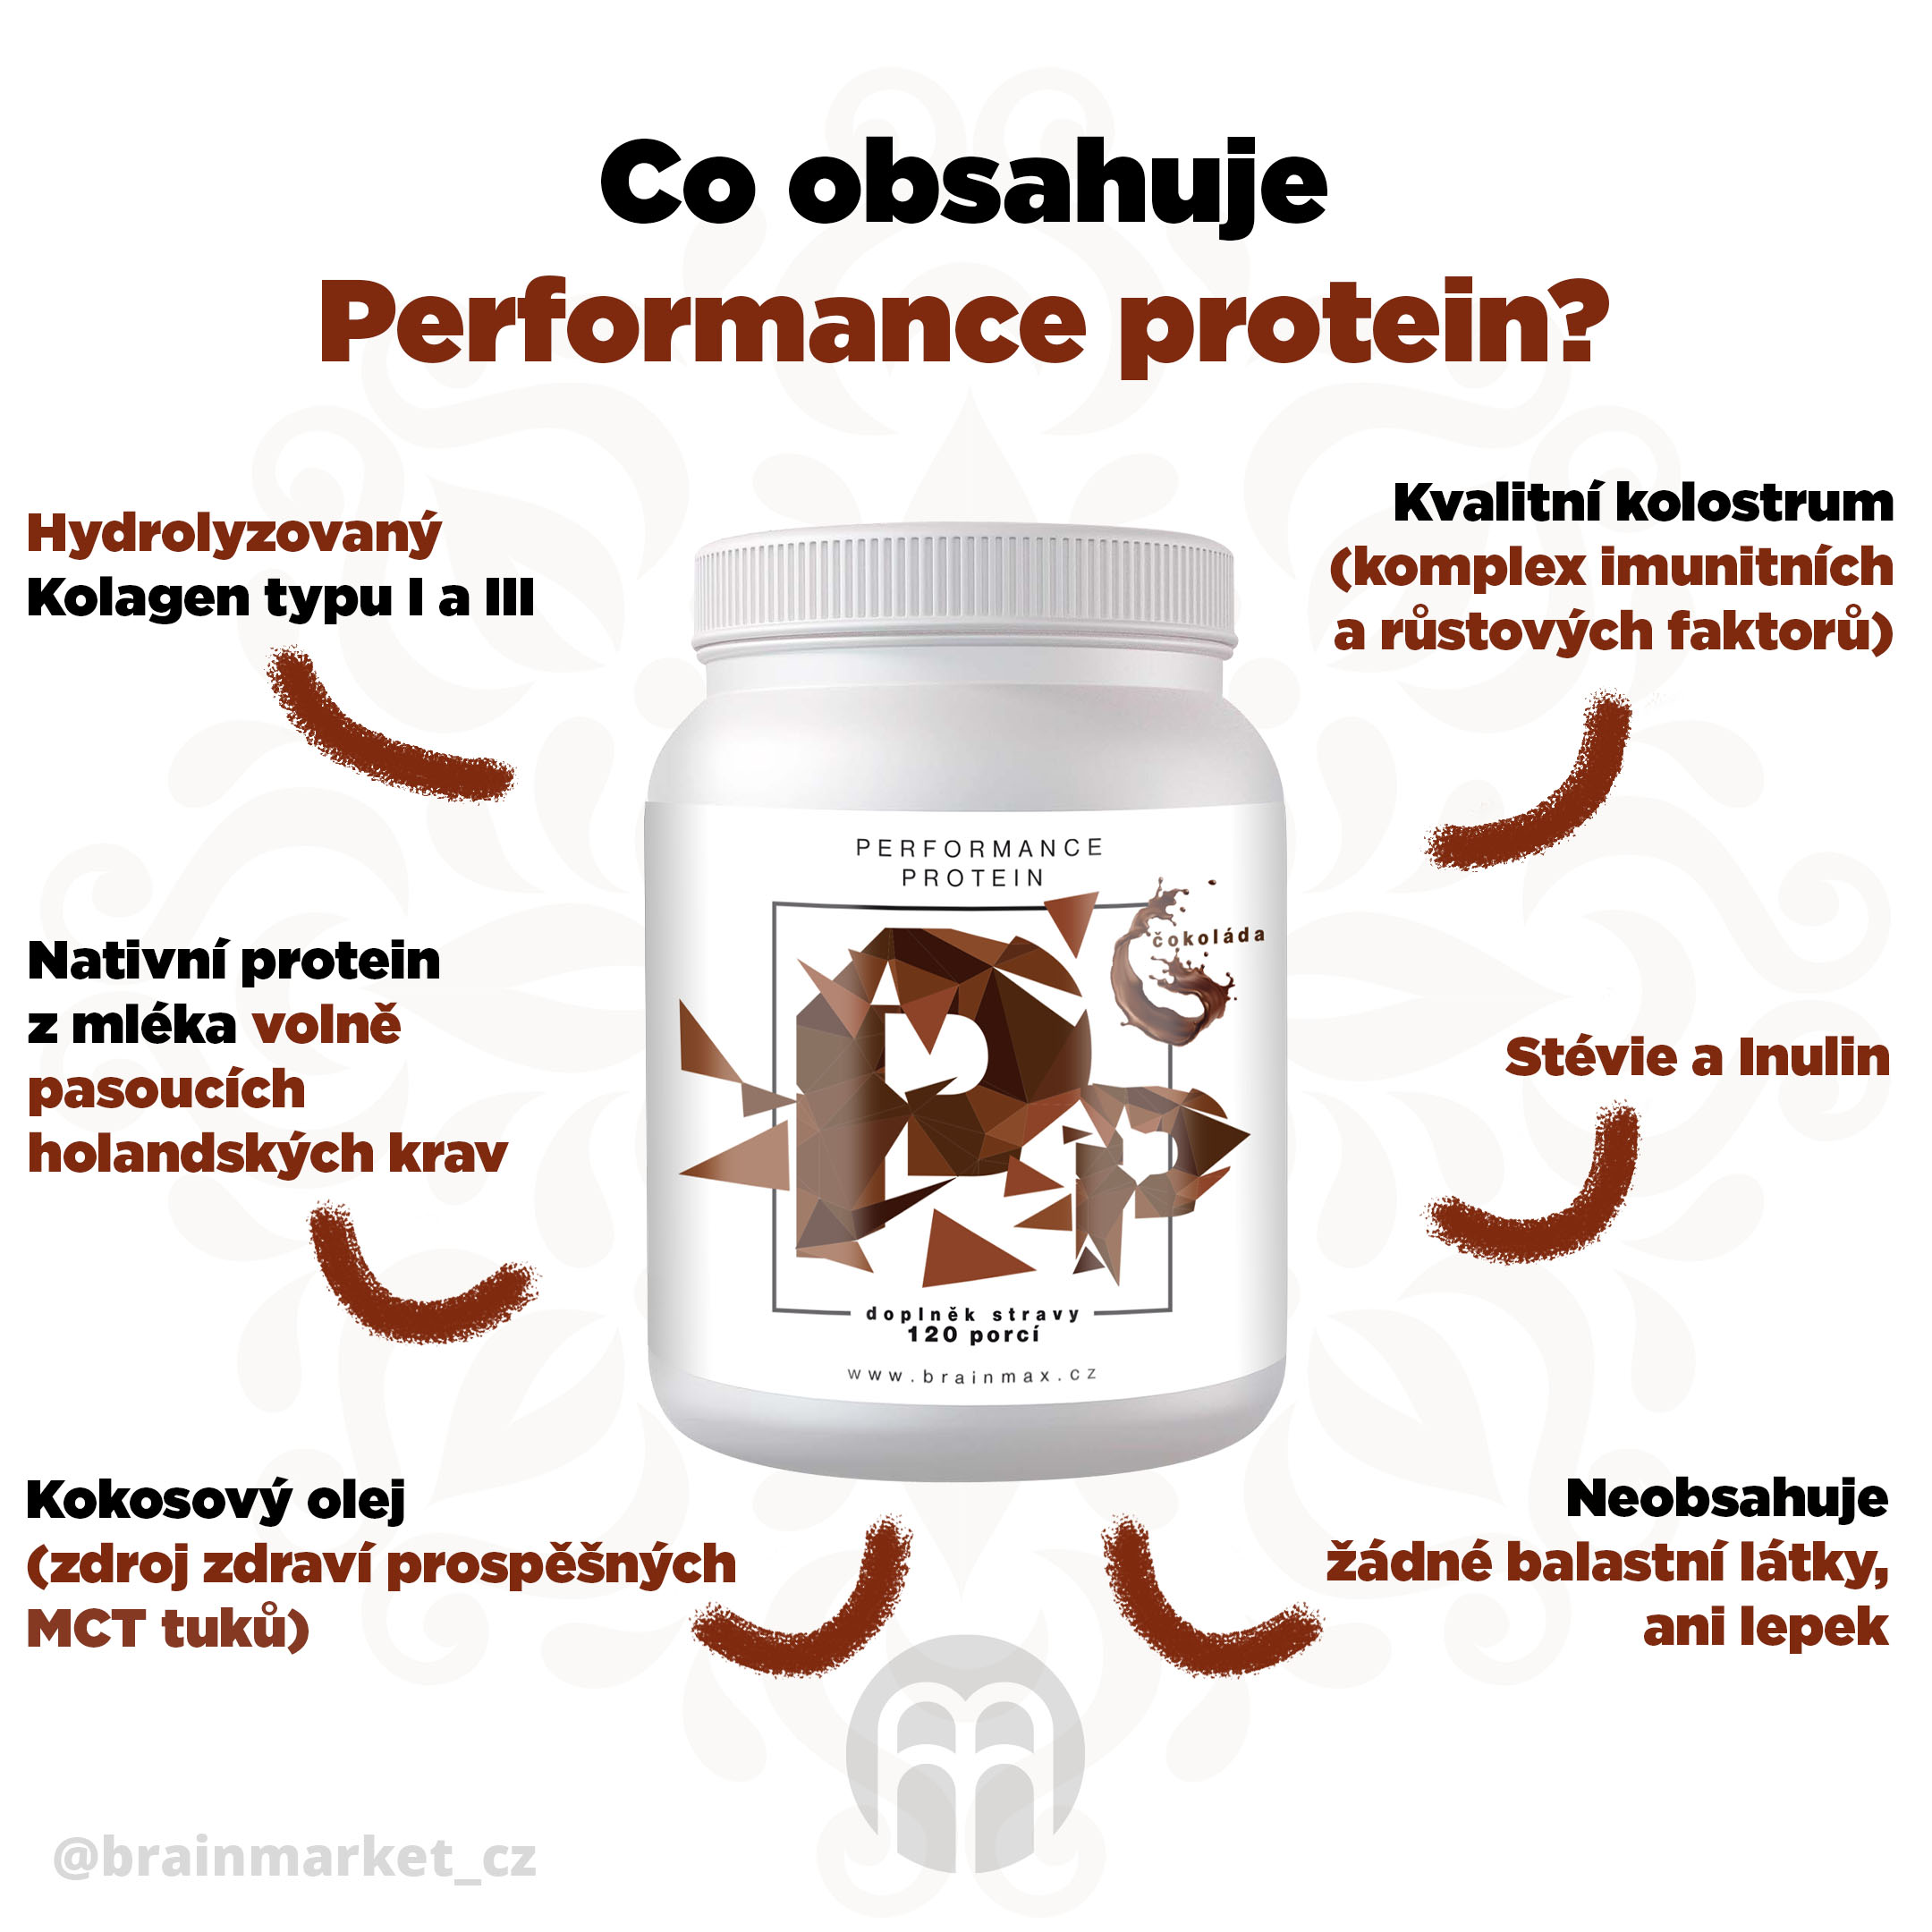 Performance protein - czekolada infografiki brainmarket CZ